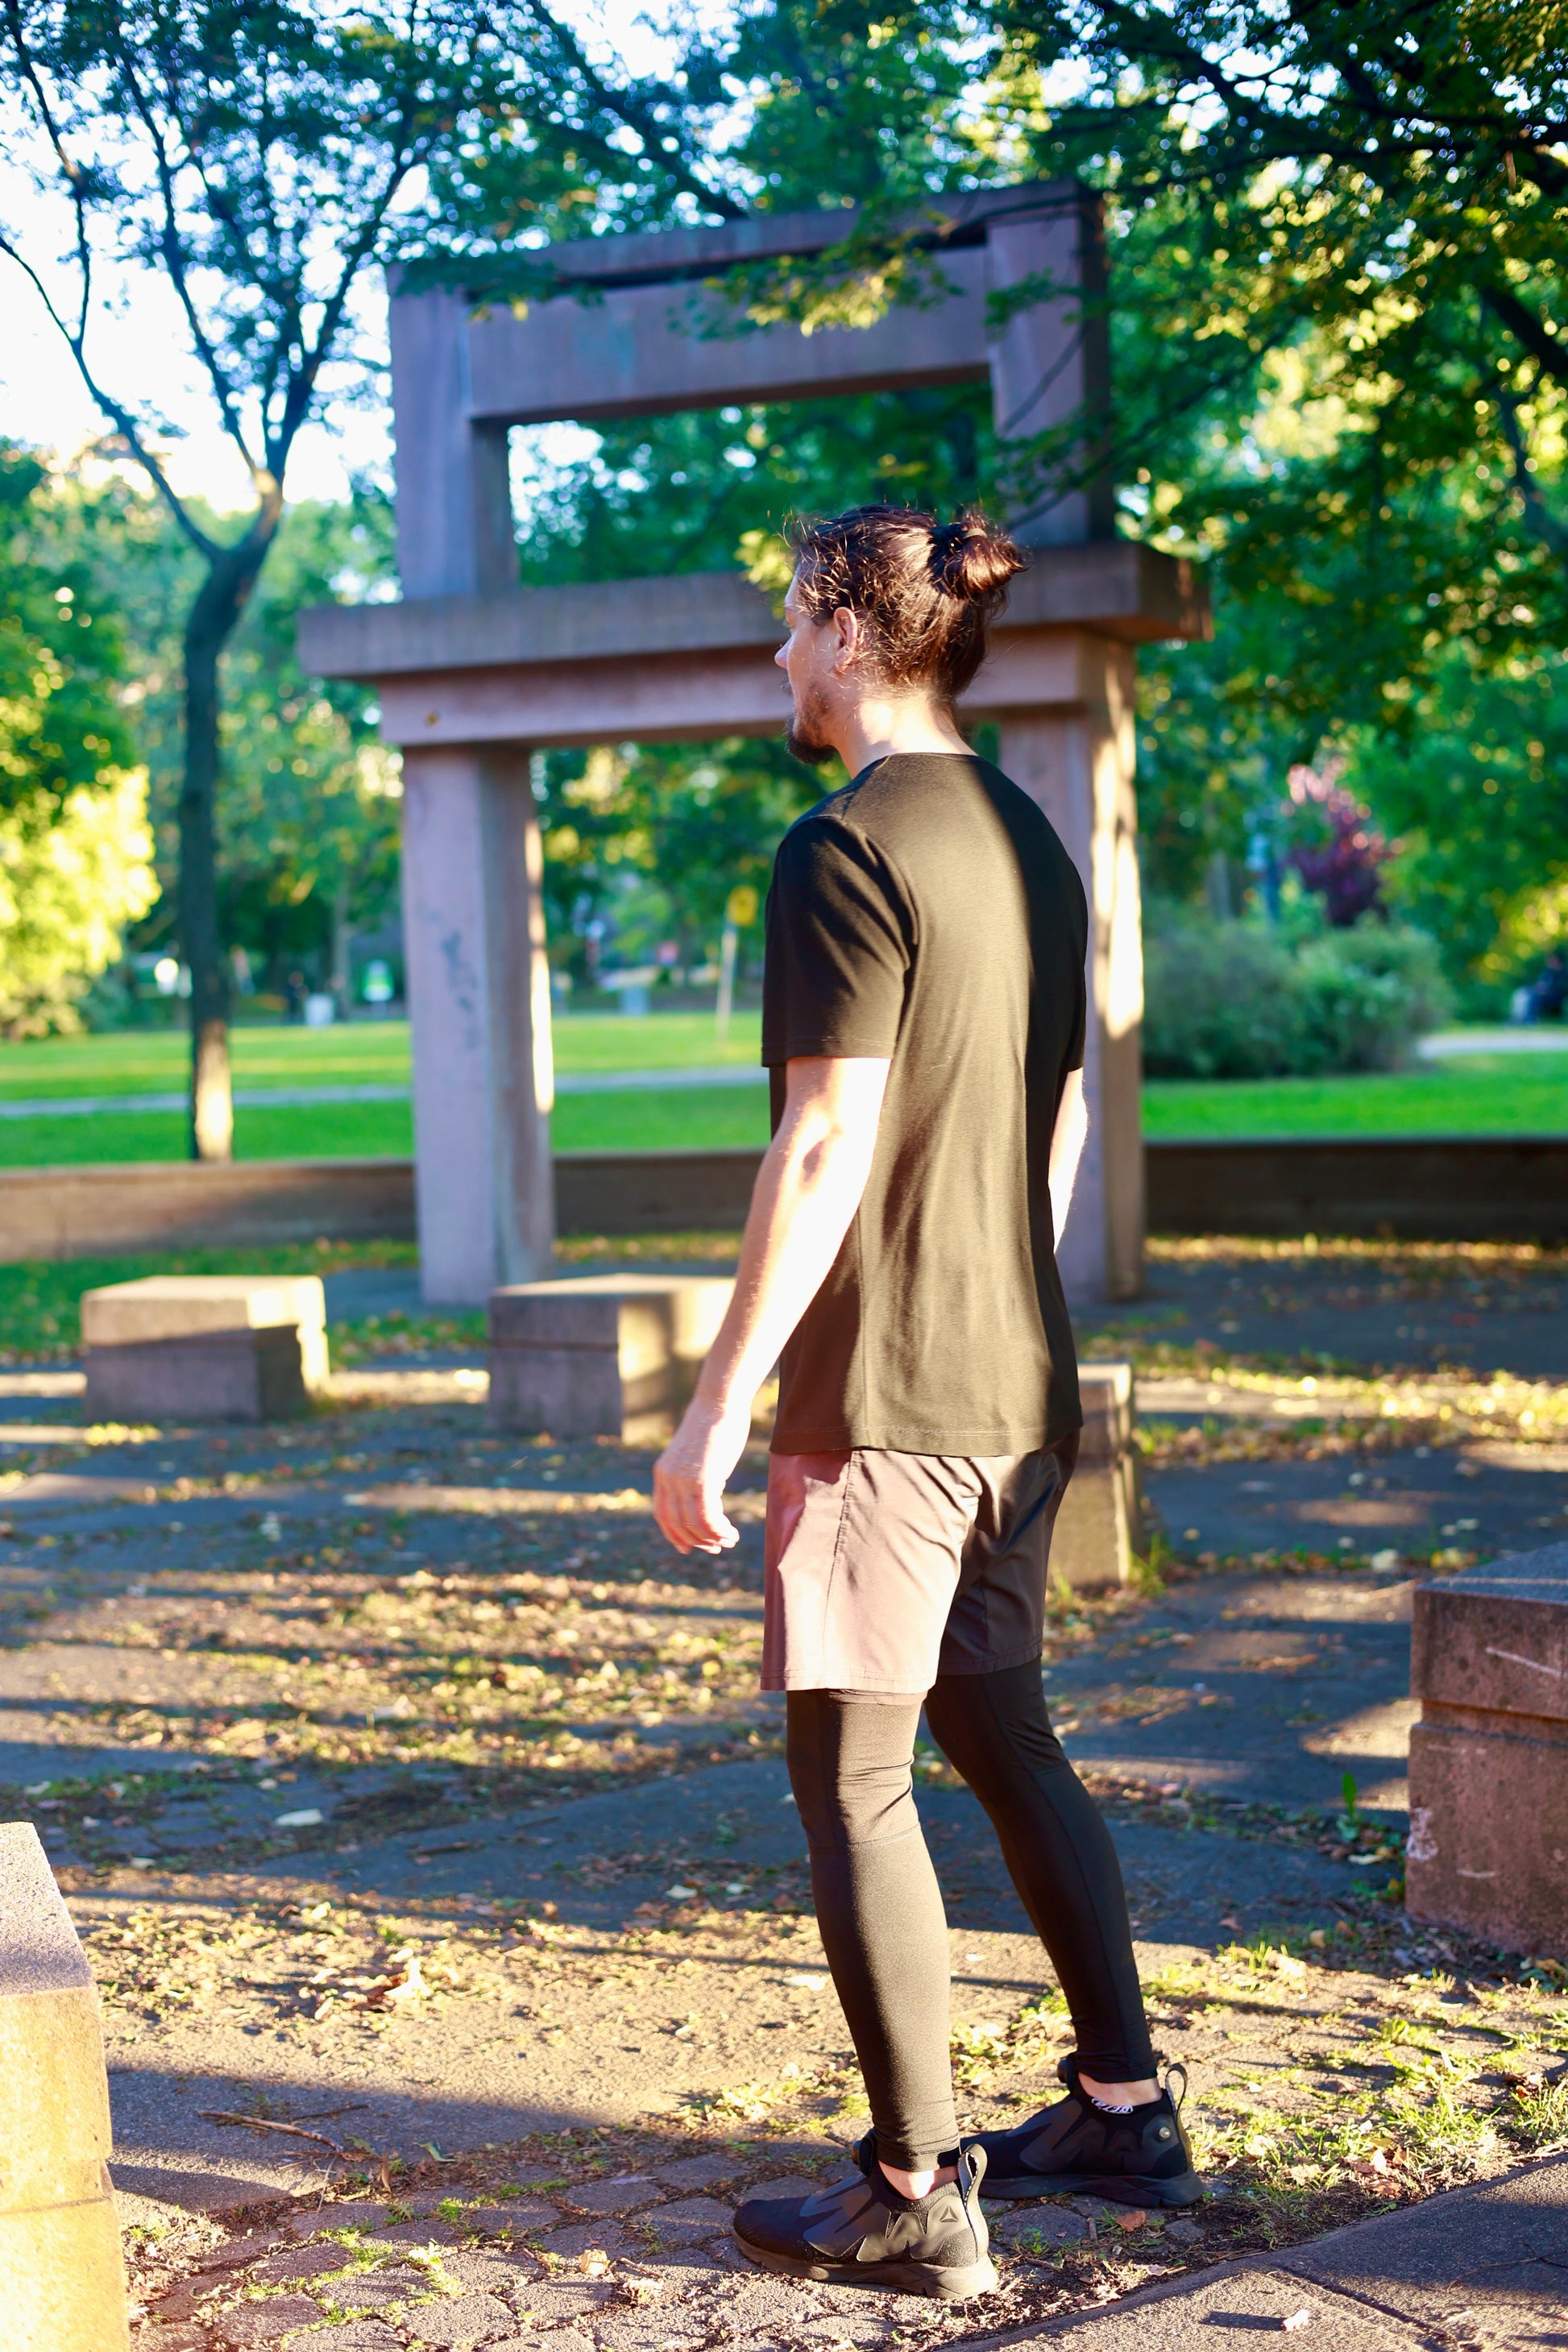 Jonathan Brunelle porte la chemise mérinos ELZI "ombre noire" dans un parc.